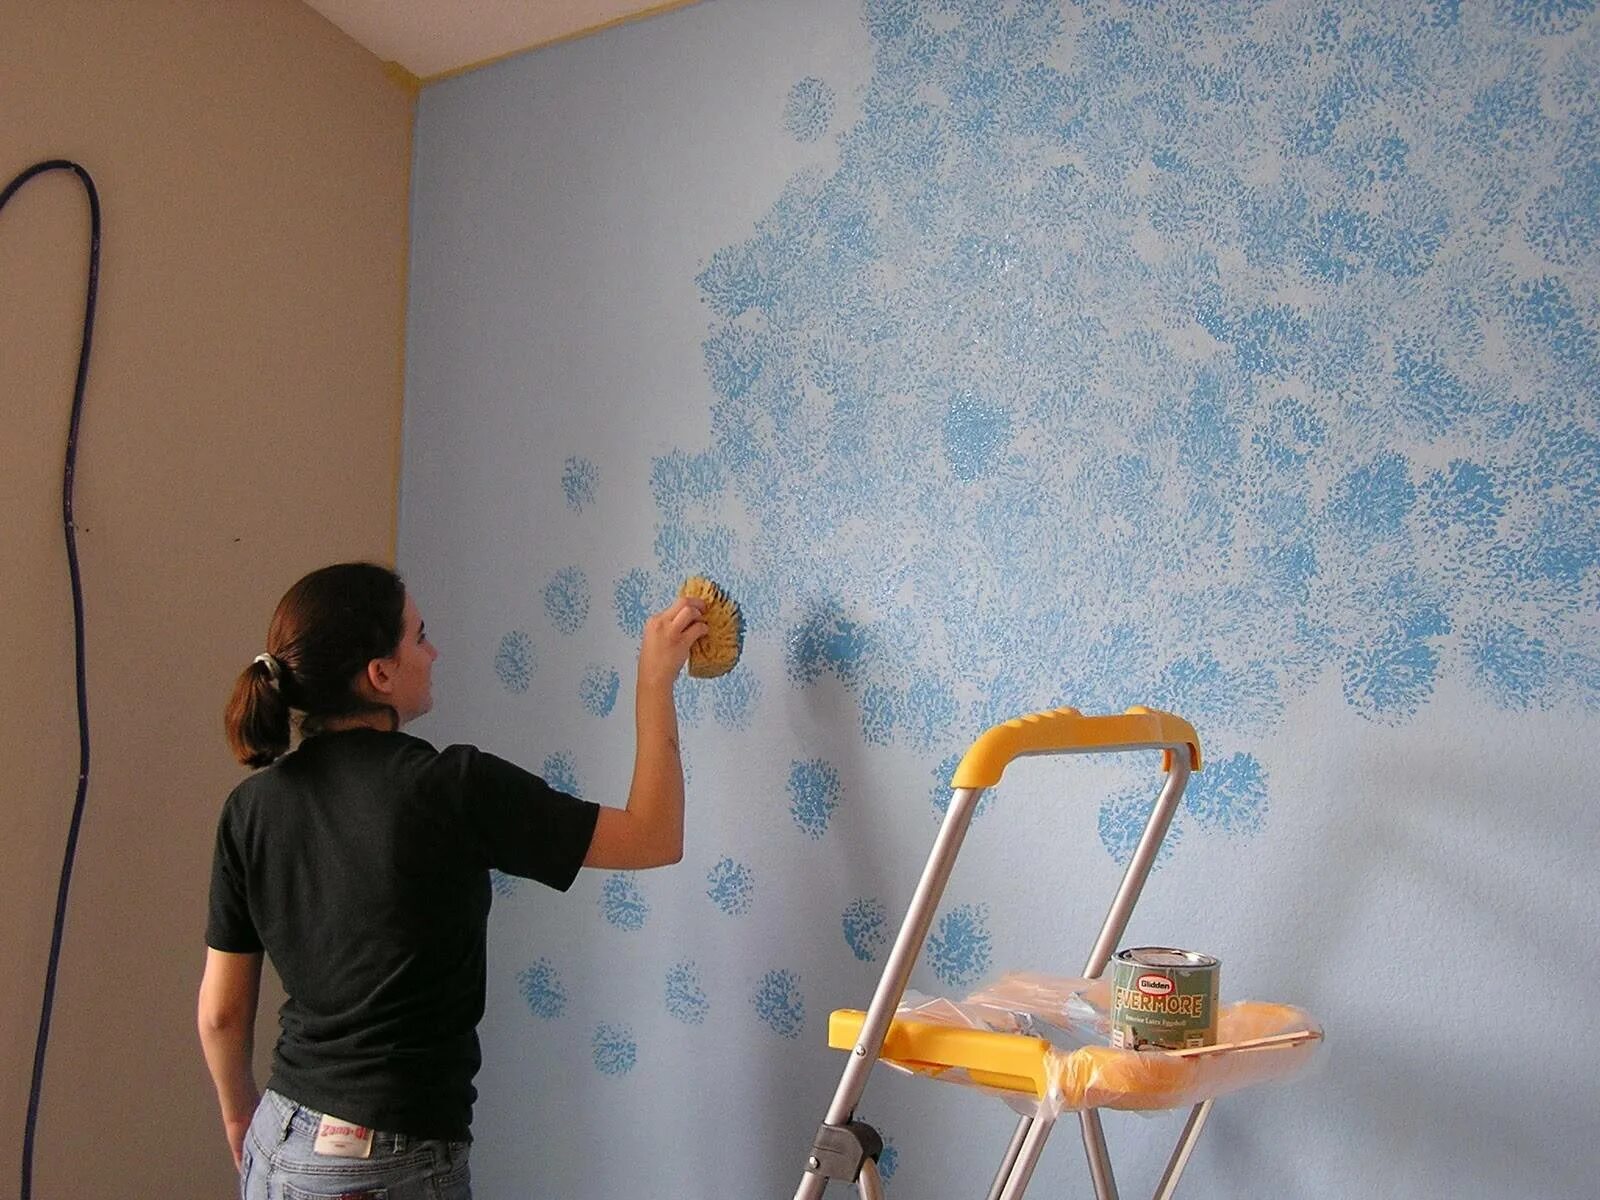 Программа на обои на стене. Декоративное окрашивание стен. Оригинальное окрашивание стен водоэмульсионной краской. Краска для стек вквартире. Декоративная побелка стен.